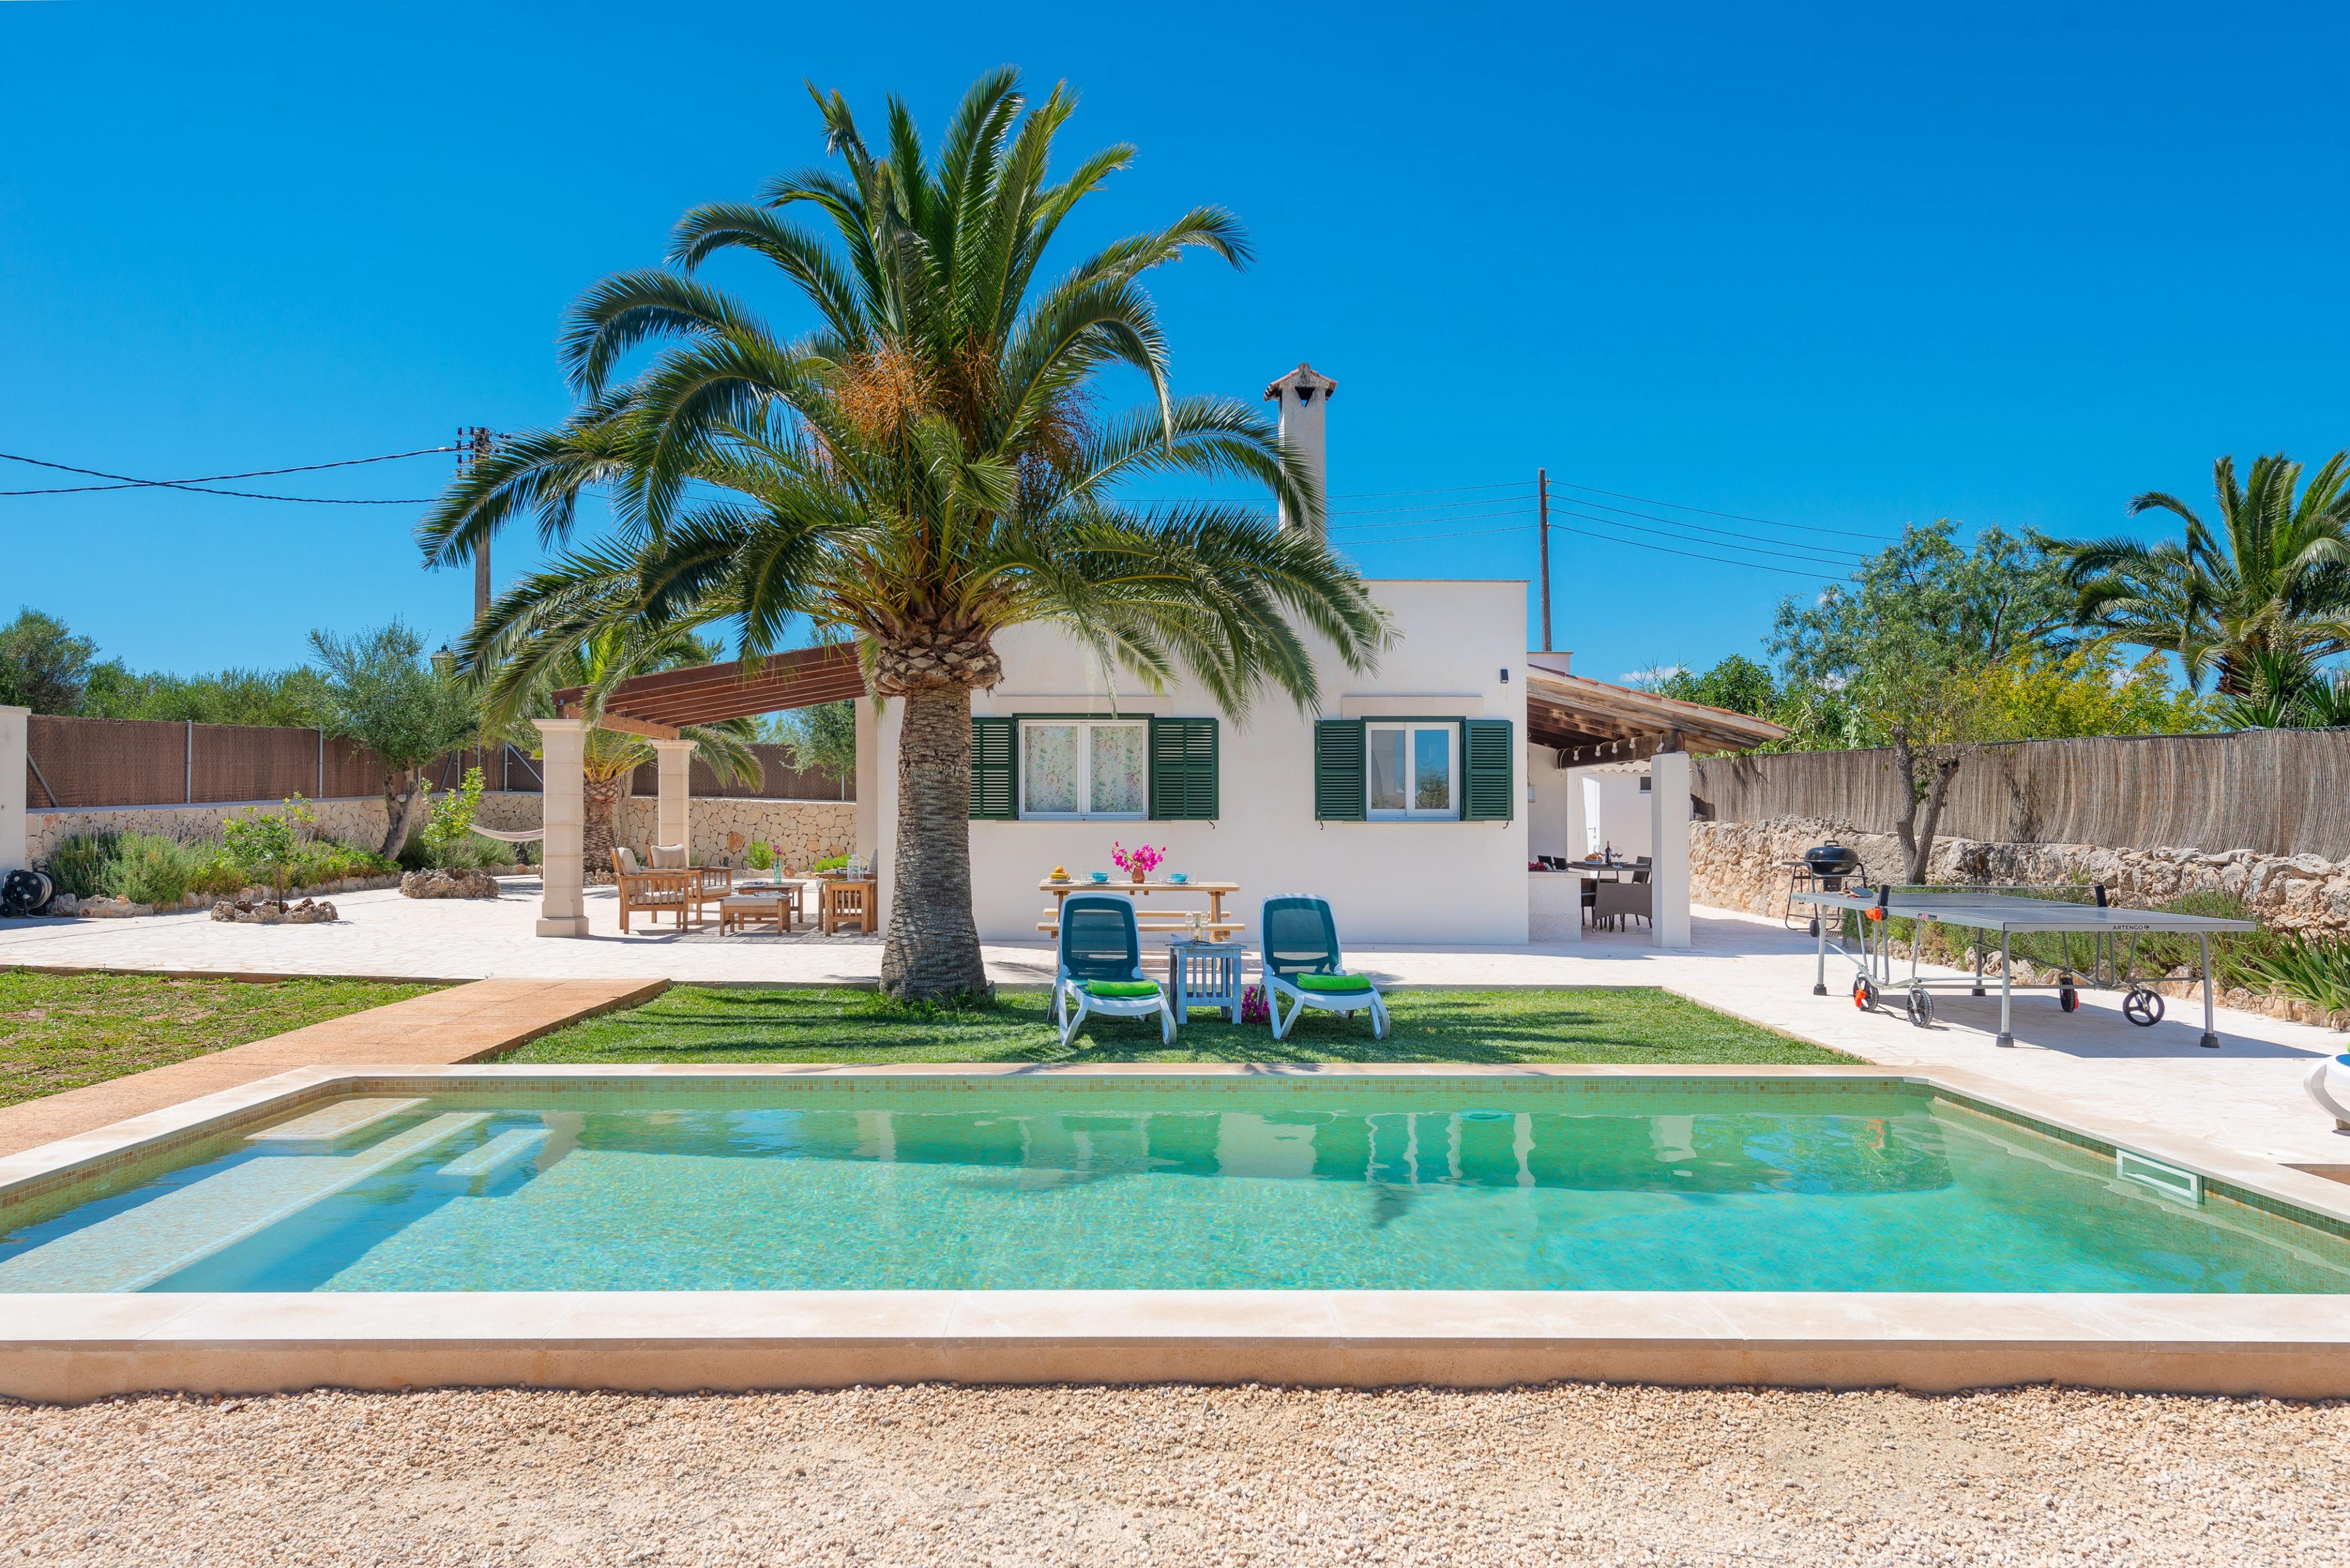 Property Image 1 - LAS ESTRELLAS - Villa with private pool in Cala Llombards (Santanyi). Free WiFi